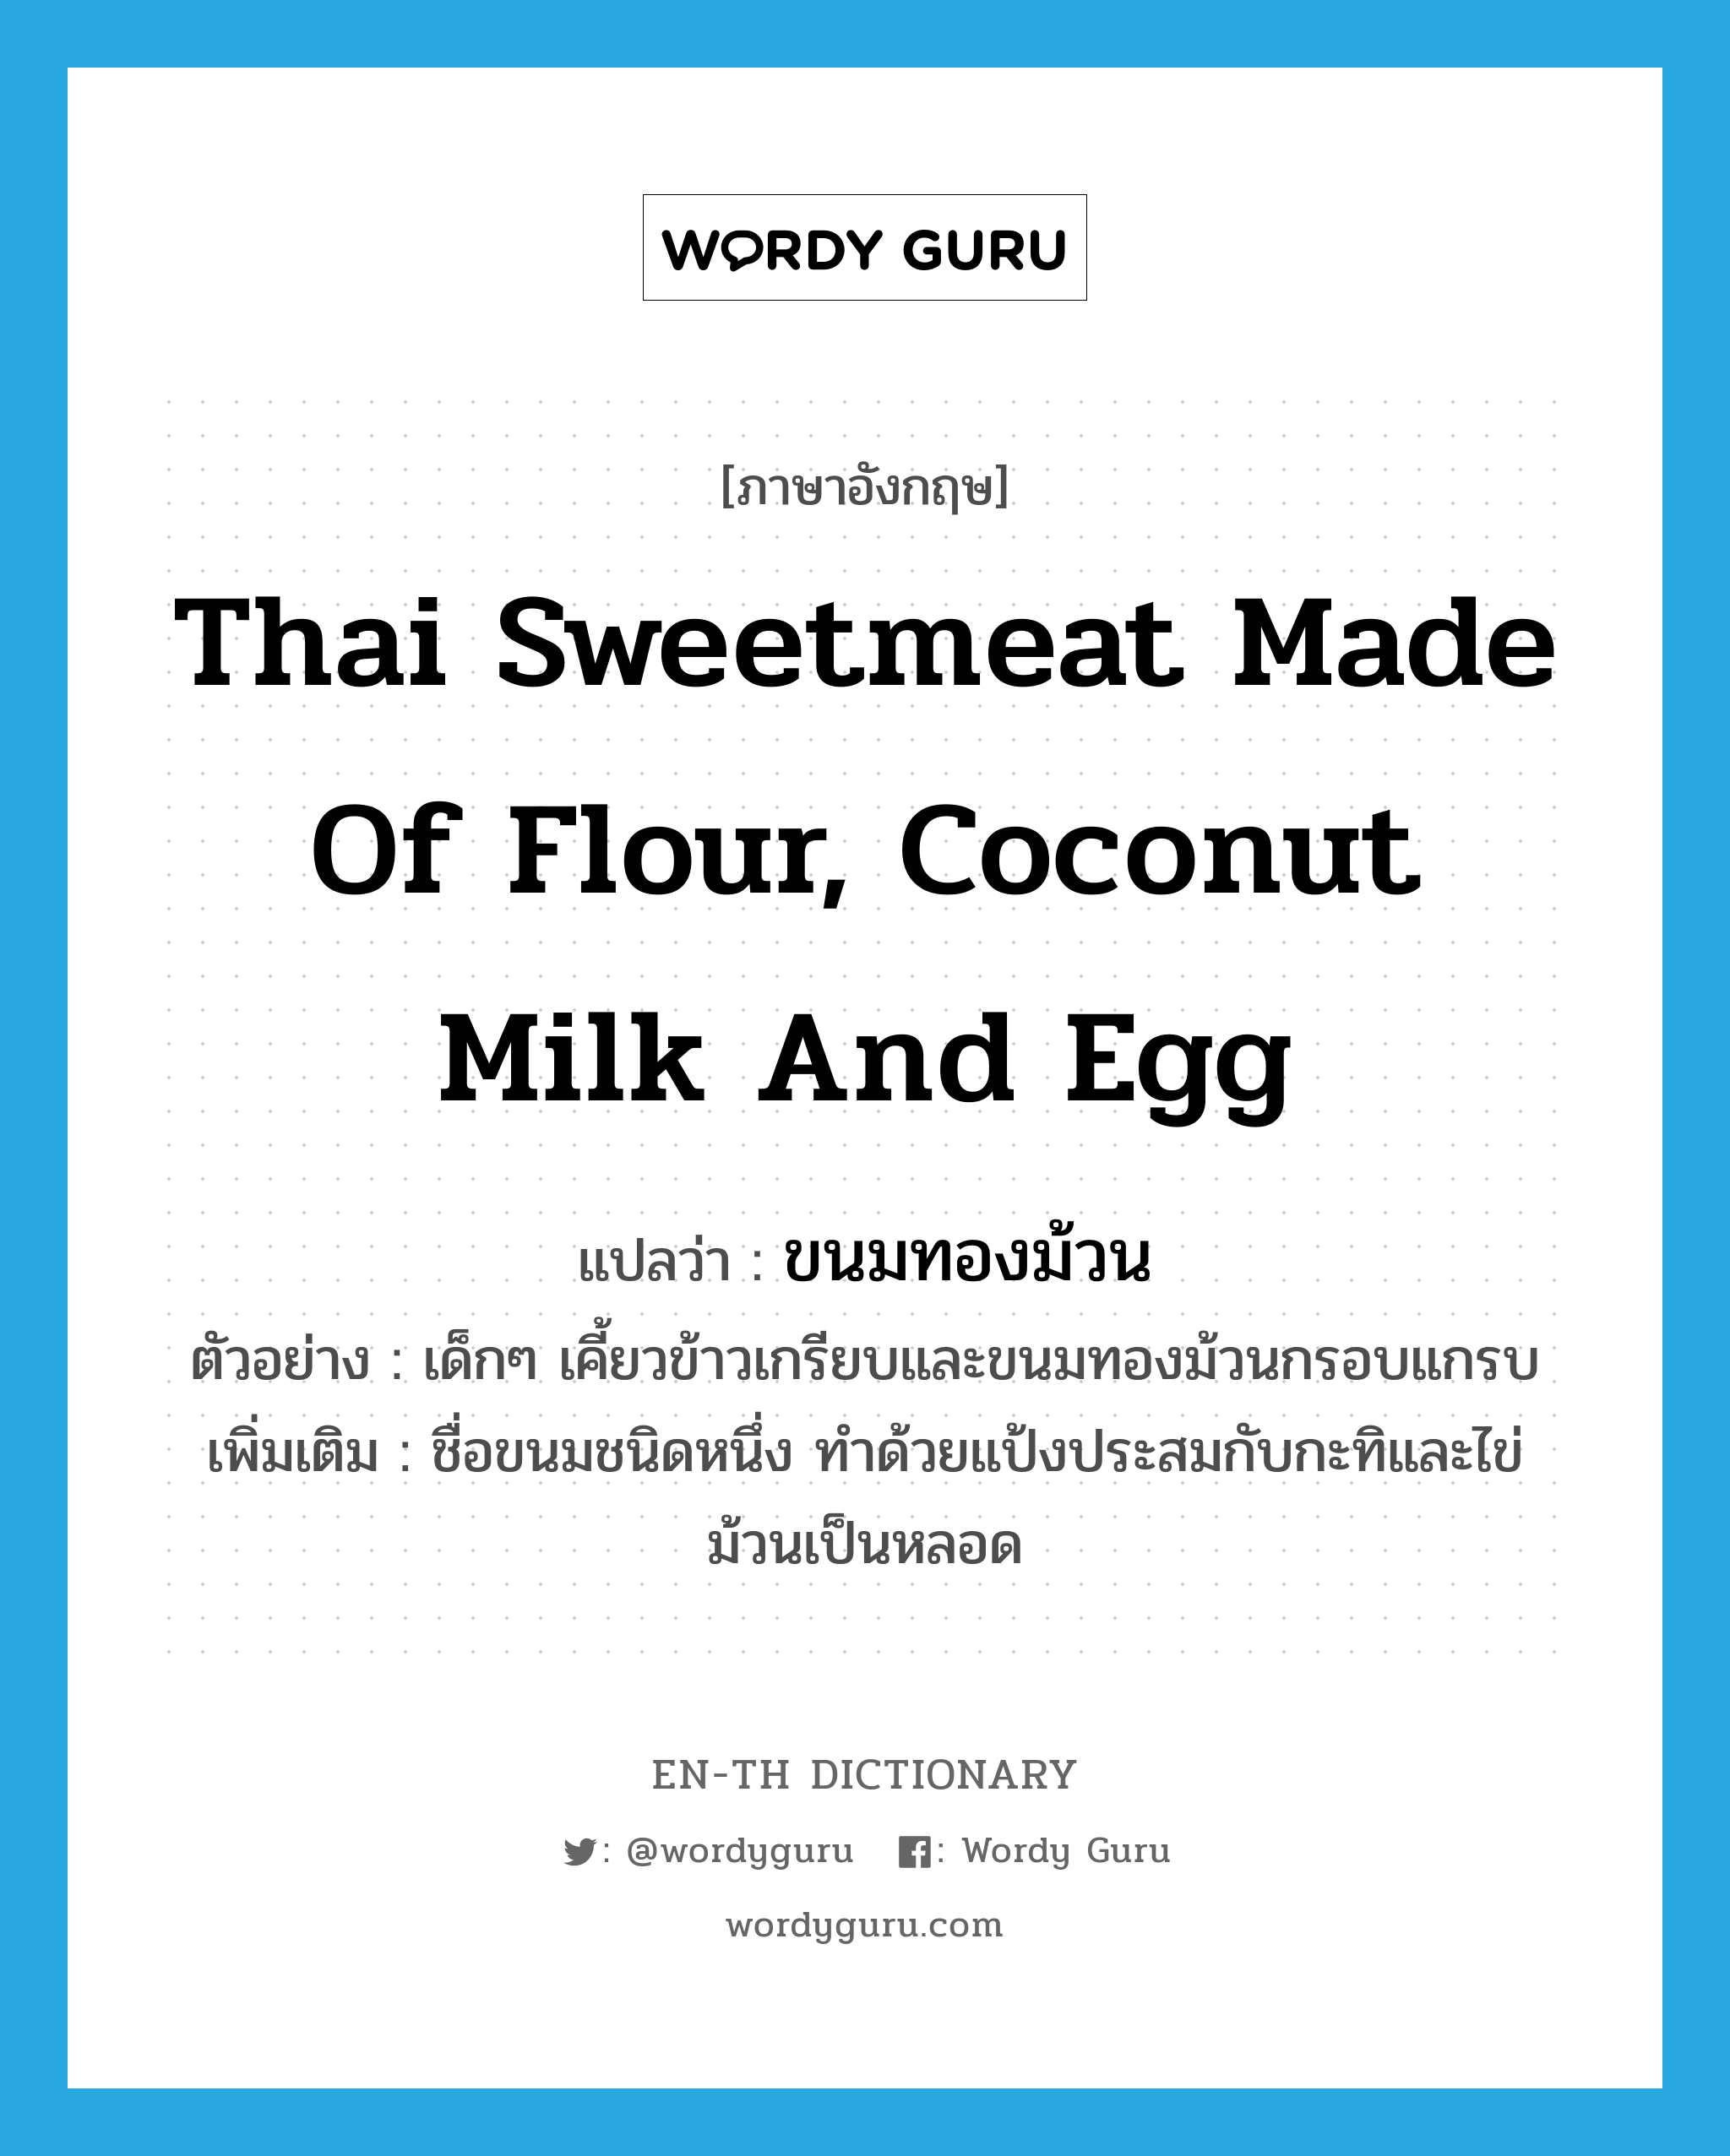 Thai sweetmeat made of flour, coconut milk and egg แปลว่า?, คำศัพท์ภาษาอังกฤษ Thai sweetmeat made of flour, coconut milk and egg แปลว่า ขนมทองม้วน ประเภท N ตัวอย่าง เด็กๆ เคี้ยวข้าวเกรียบและขนมทองม้วนกรอบแกรบ เพิ่มเติม ชื่อขนมชนิดหนึ่ง ทำด้วยแป้งประสมกับกะทิและไข่ ม้วนเป็นหลอด หมวด N